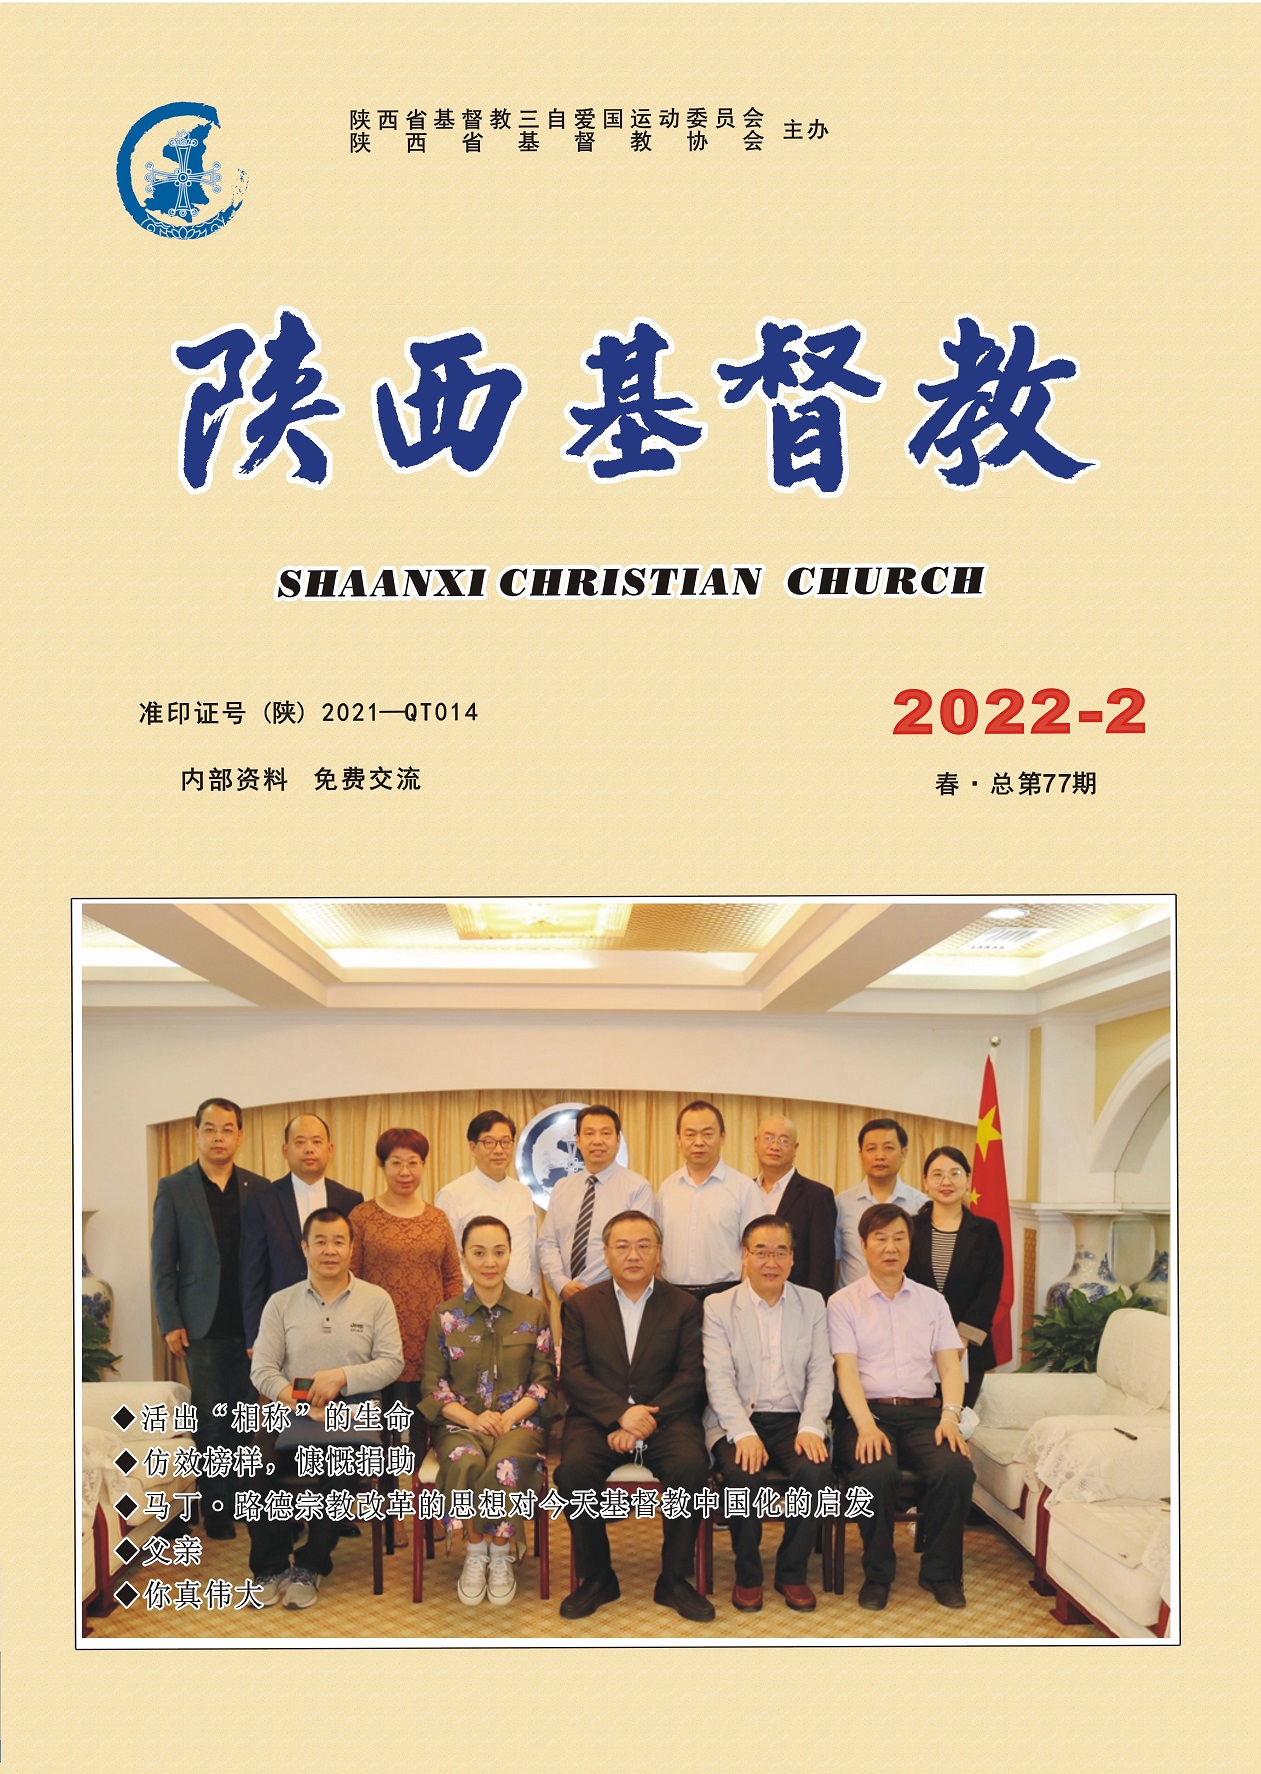 《陕西基督教》2022年第2期